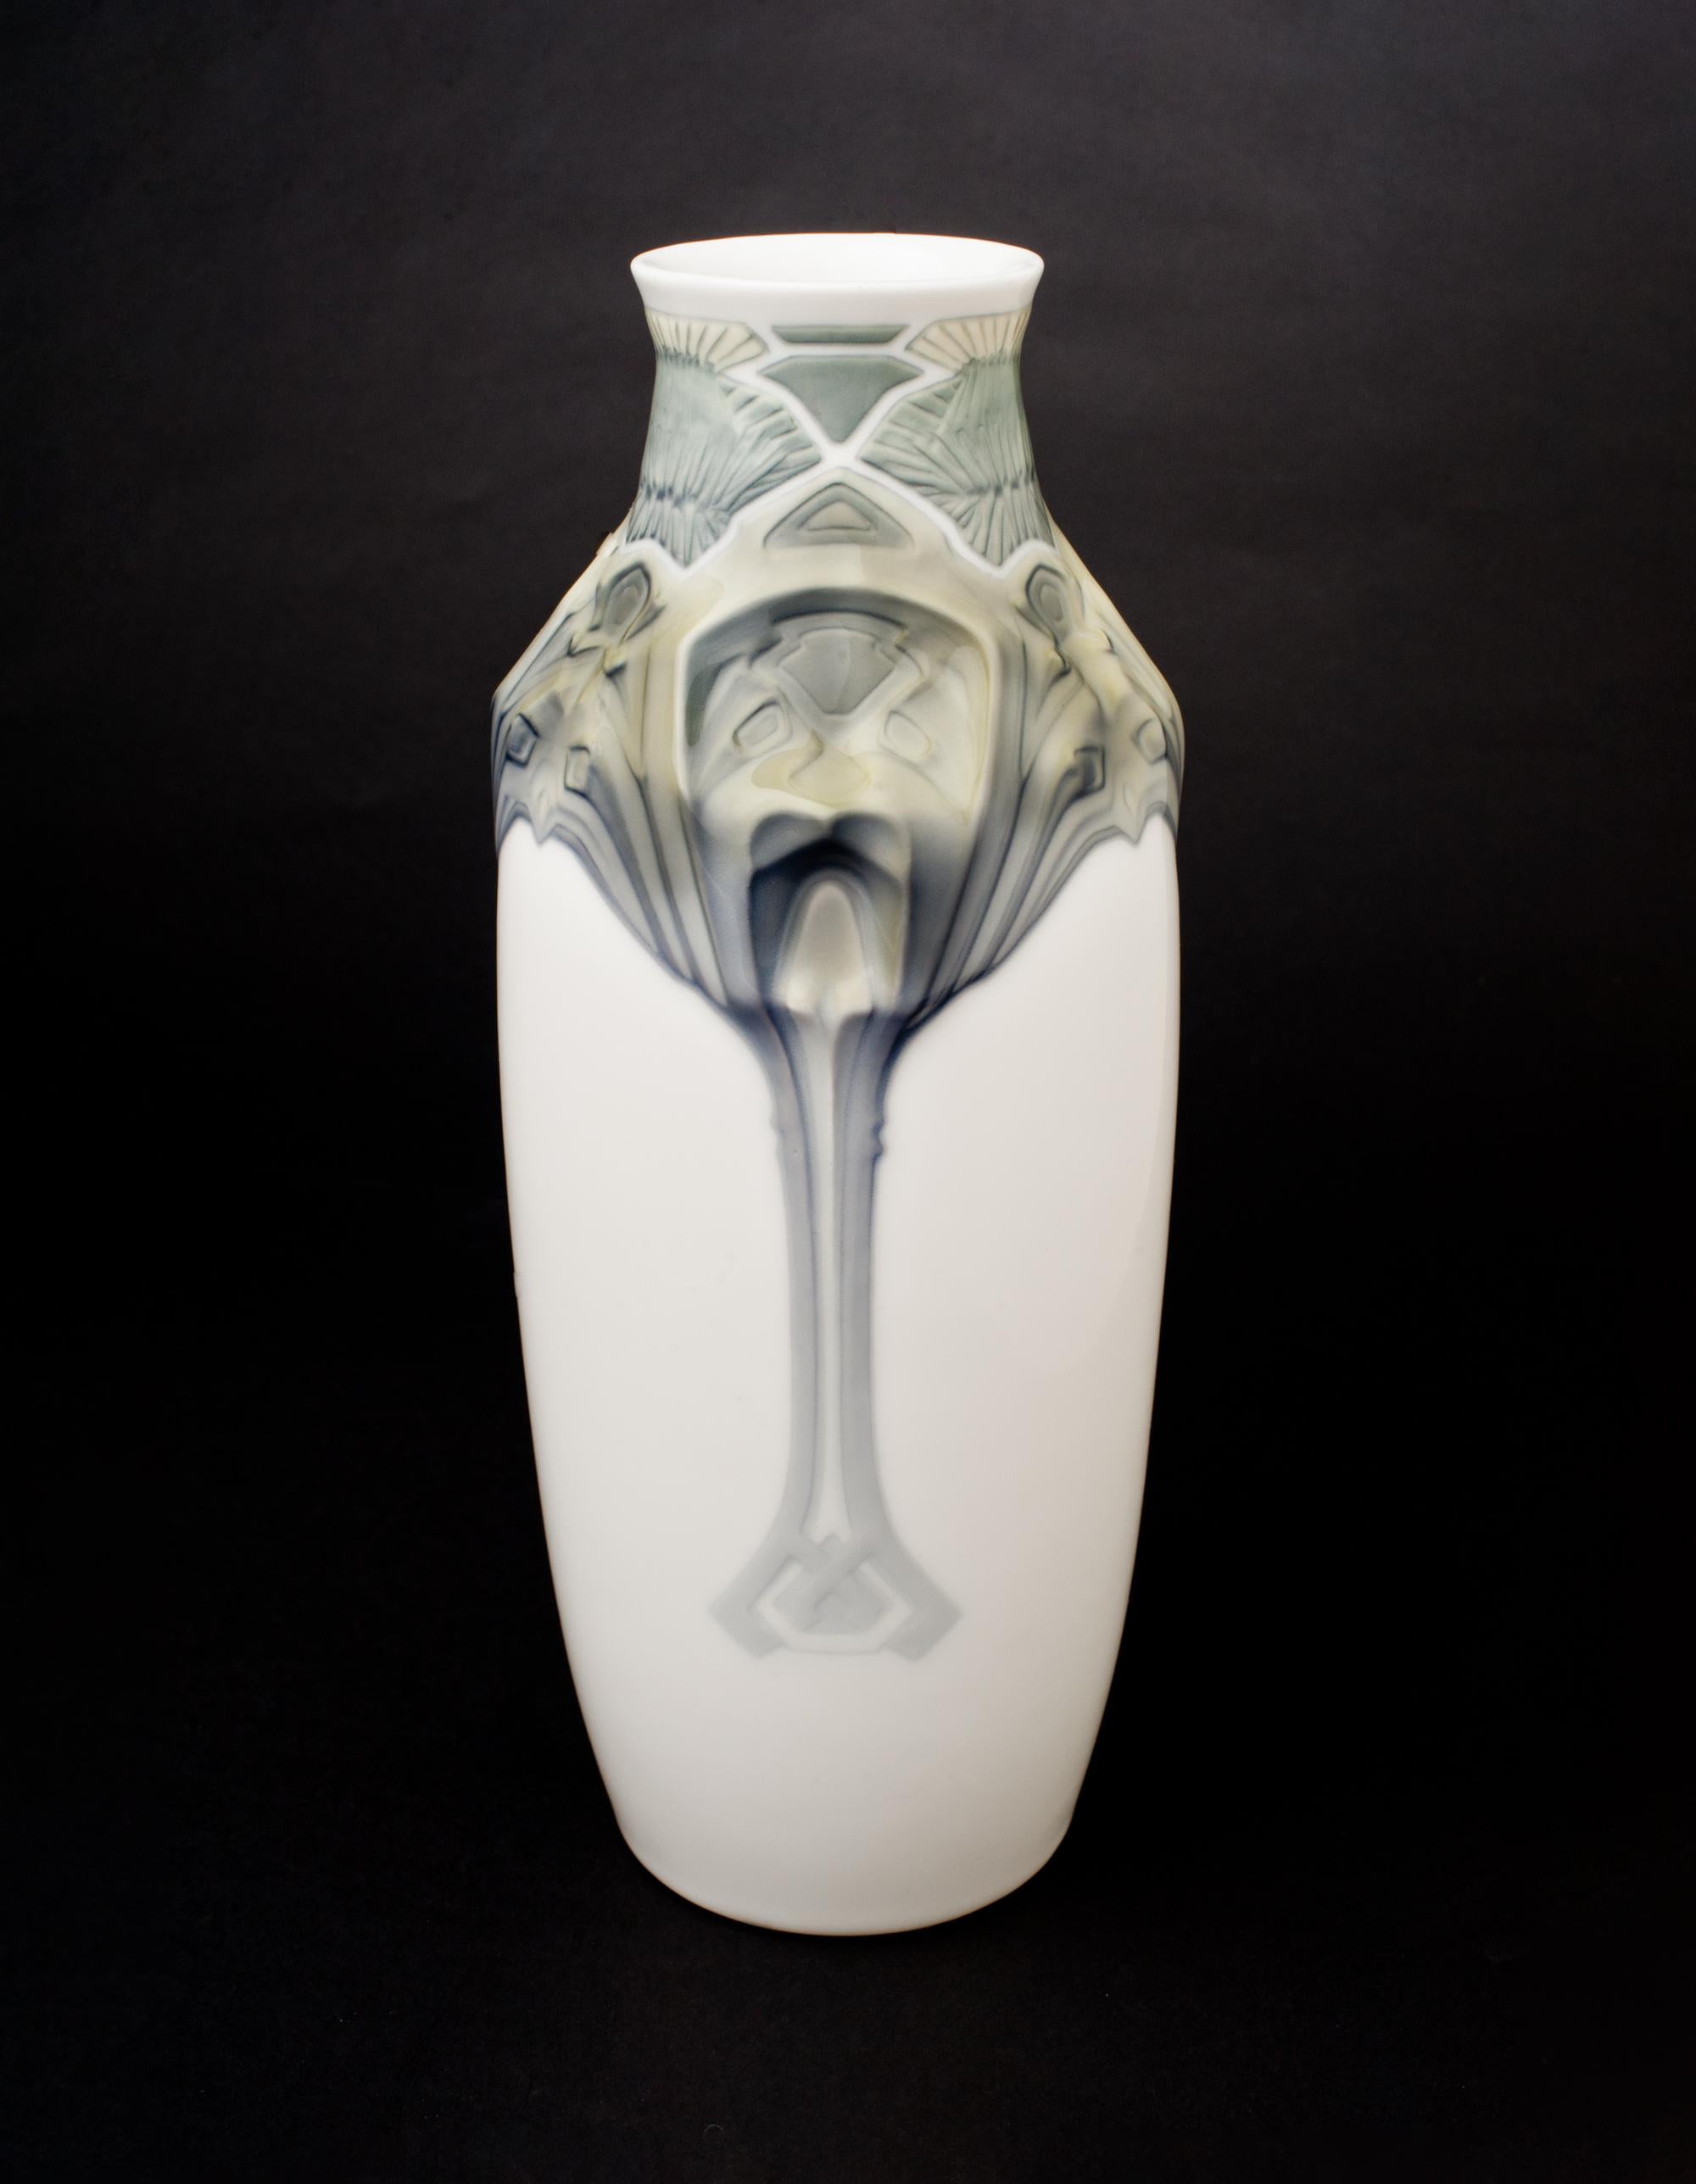 Theodor Hermann Schmuz-Baudiss für Konigliche Porzellan-Manufaktur.

Diese Vase zeigt eine geometrische Distel am Hals und verschiedene Tierdarstellungen an den Schultern, einen Falken und einen Löwen/Bären/Hund in irgendeiner Form. Ein